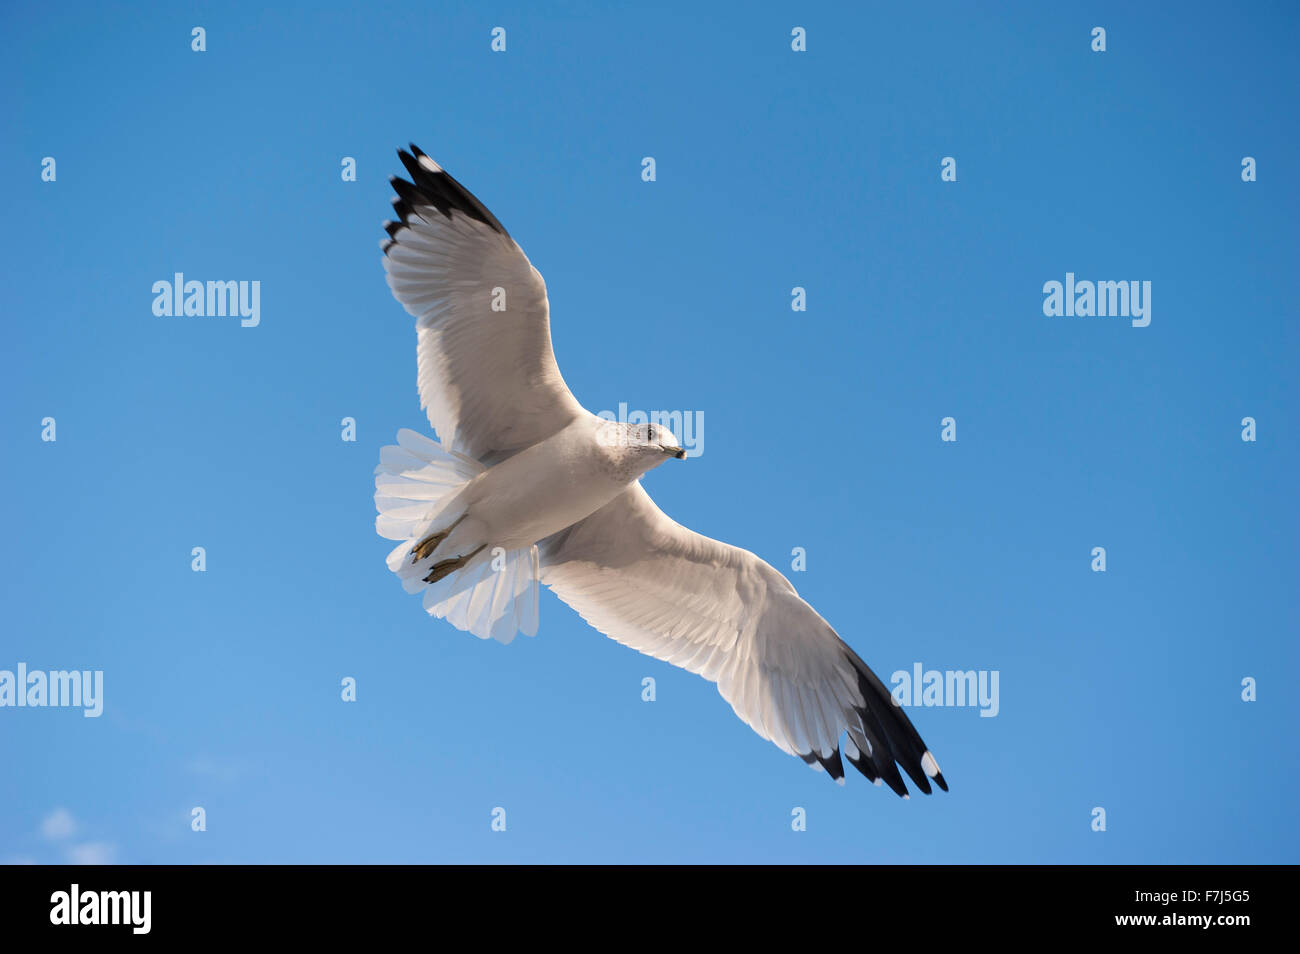 Gull flying in blue sky Stock Photo